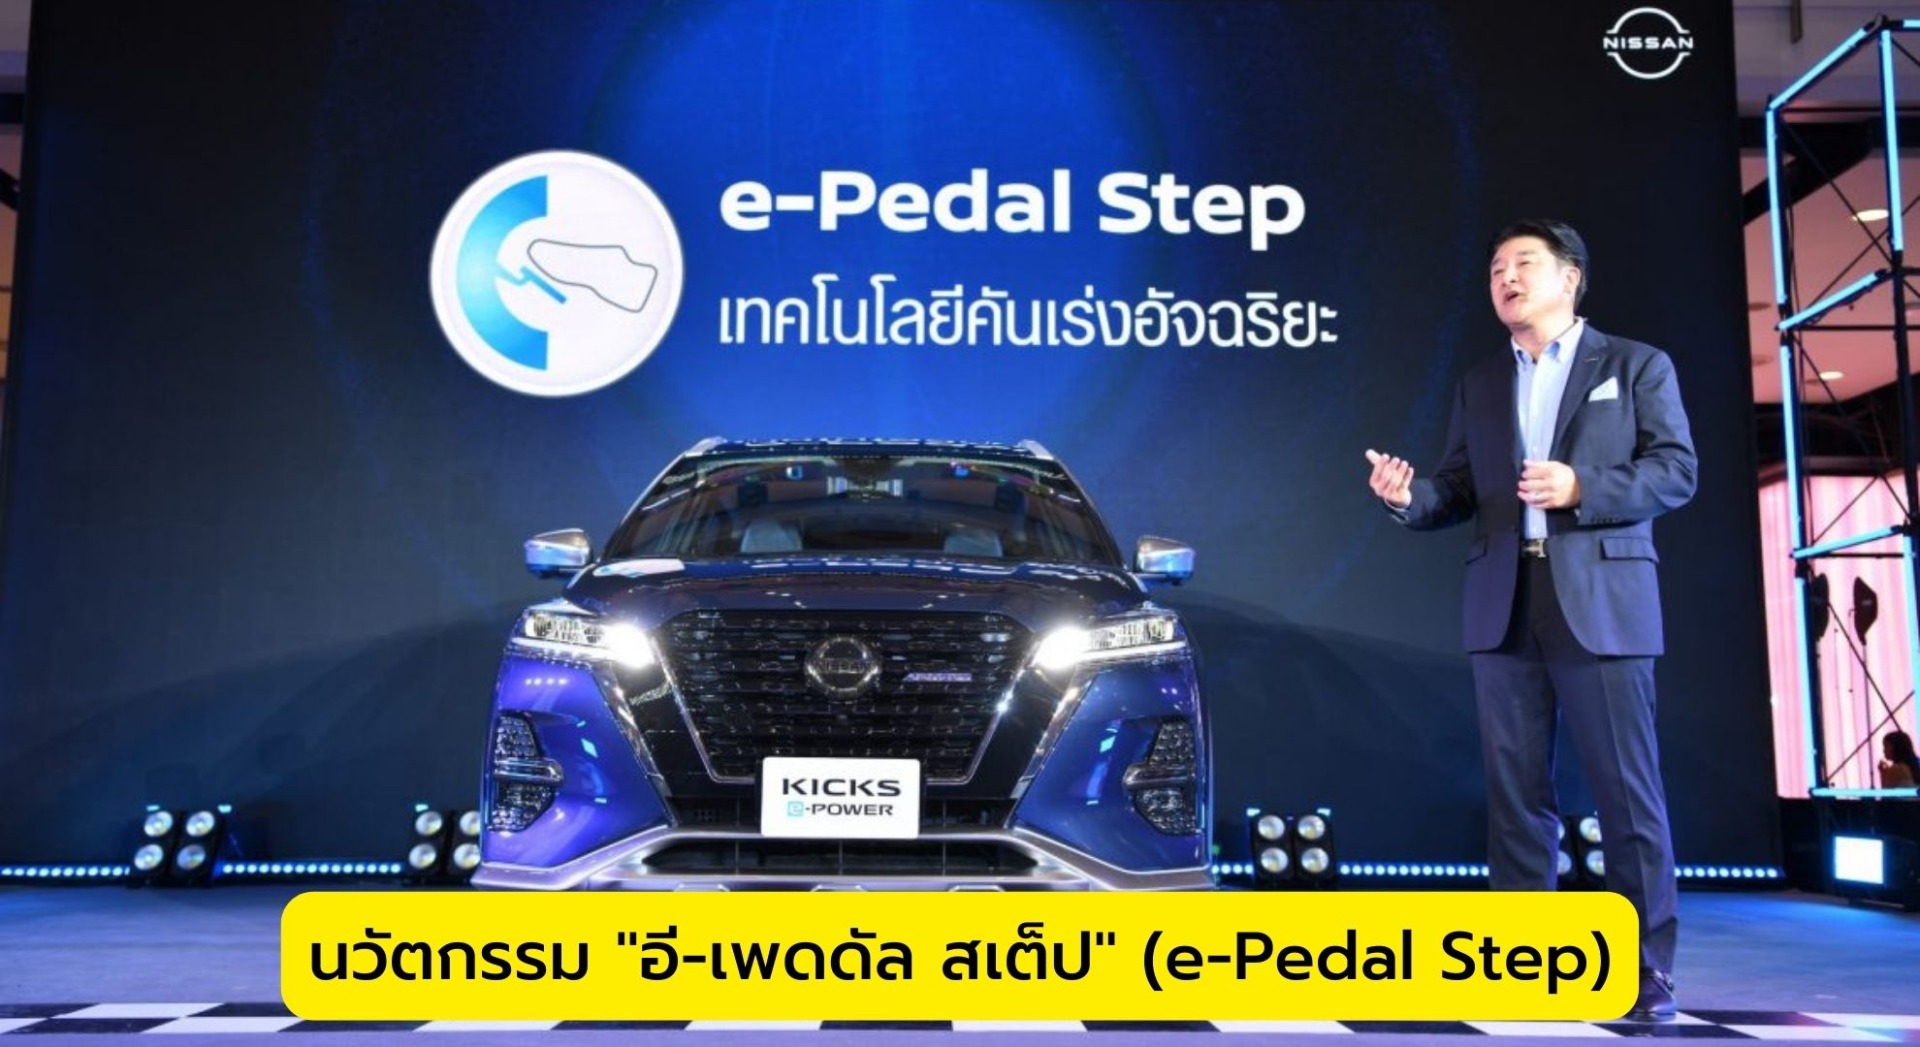 นวัตกรรม "อี-เพดดัล สเต็ป" (e-Pedal Step)